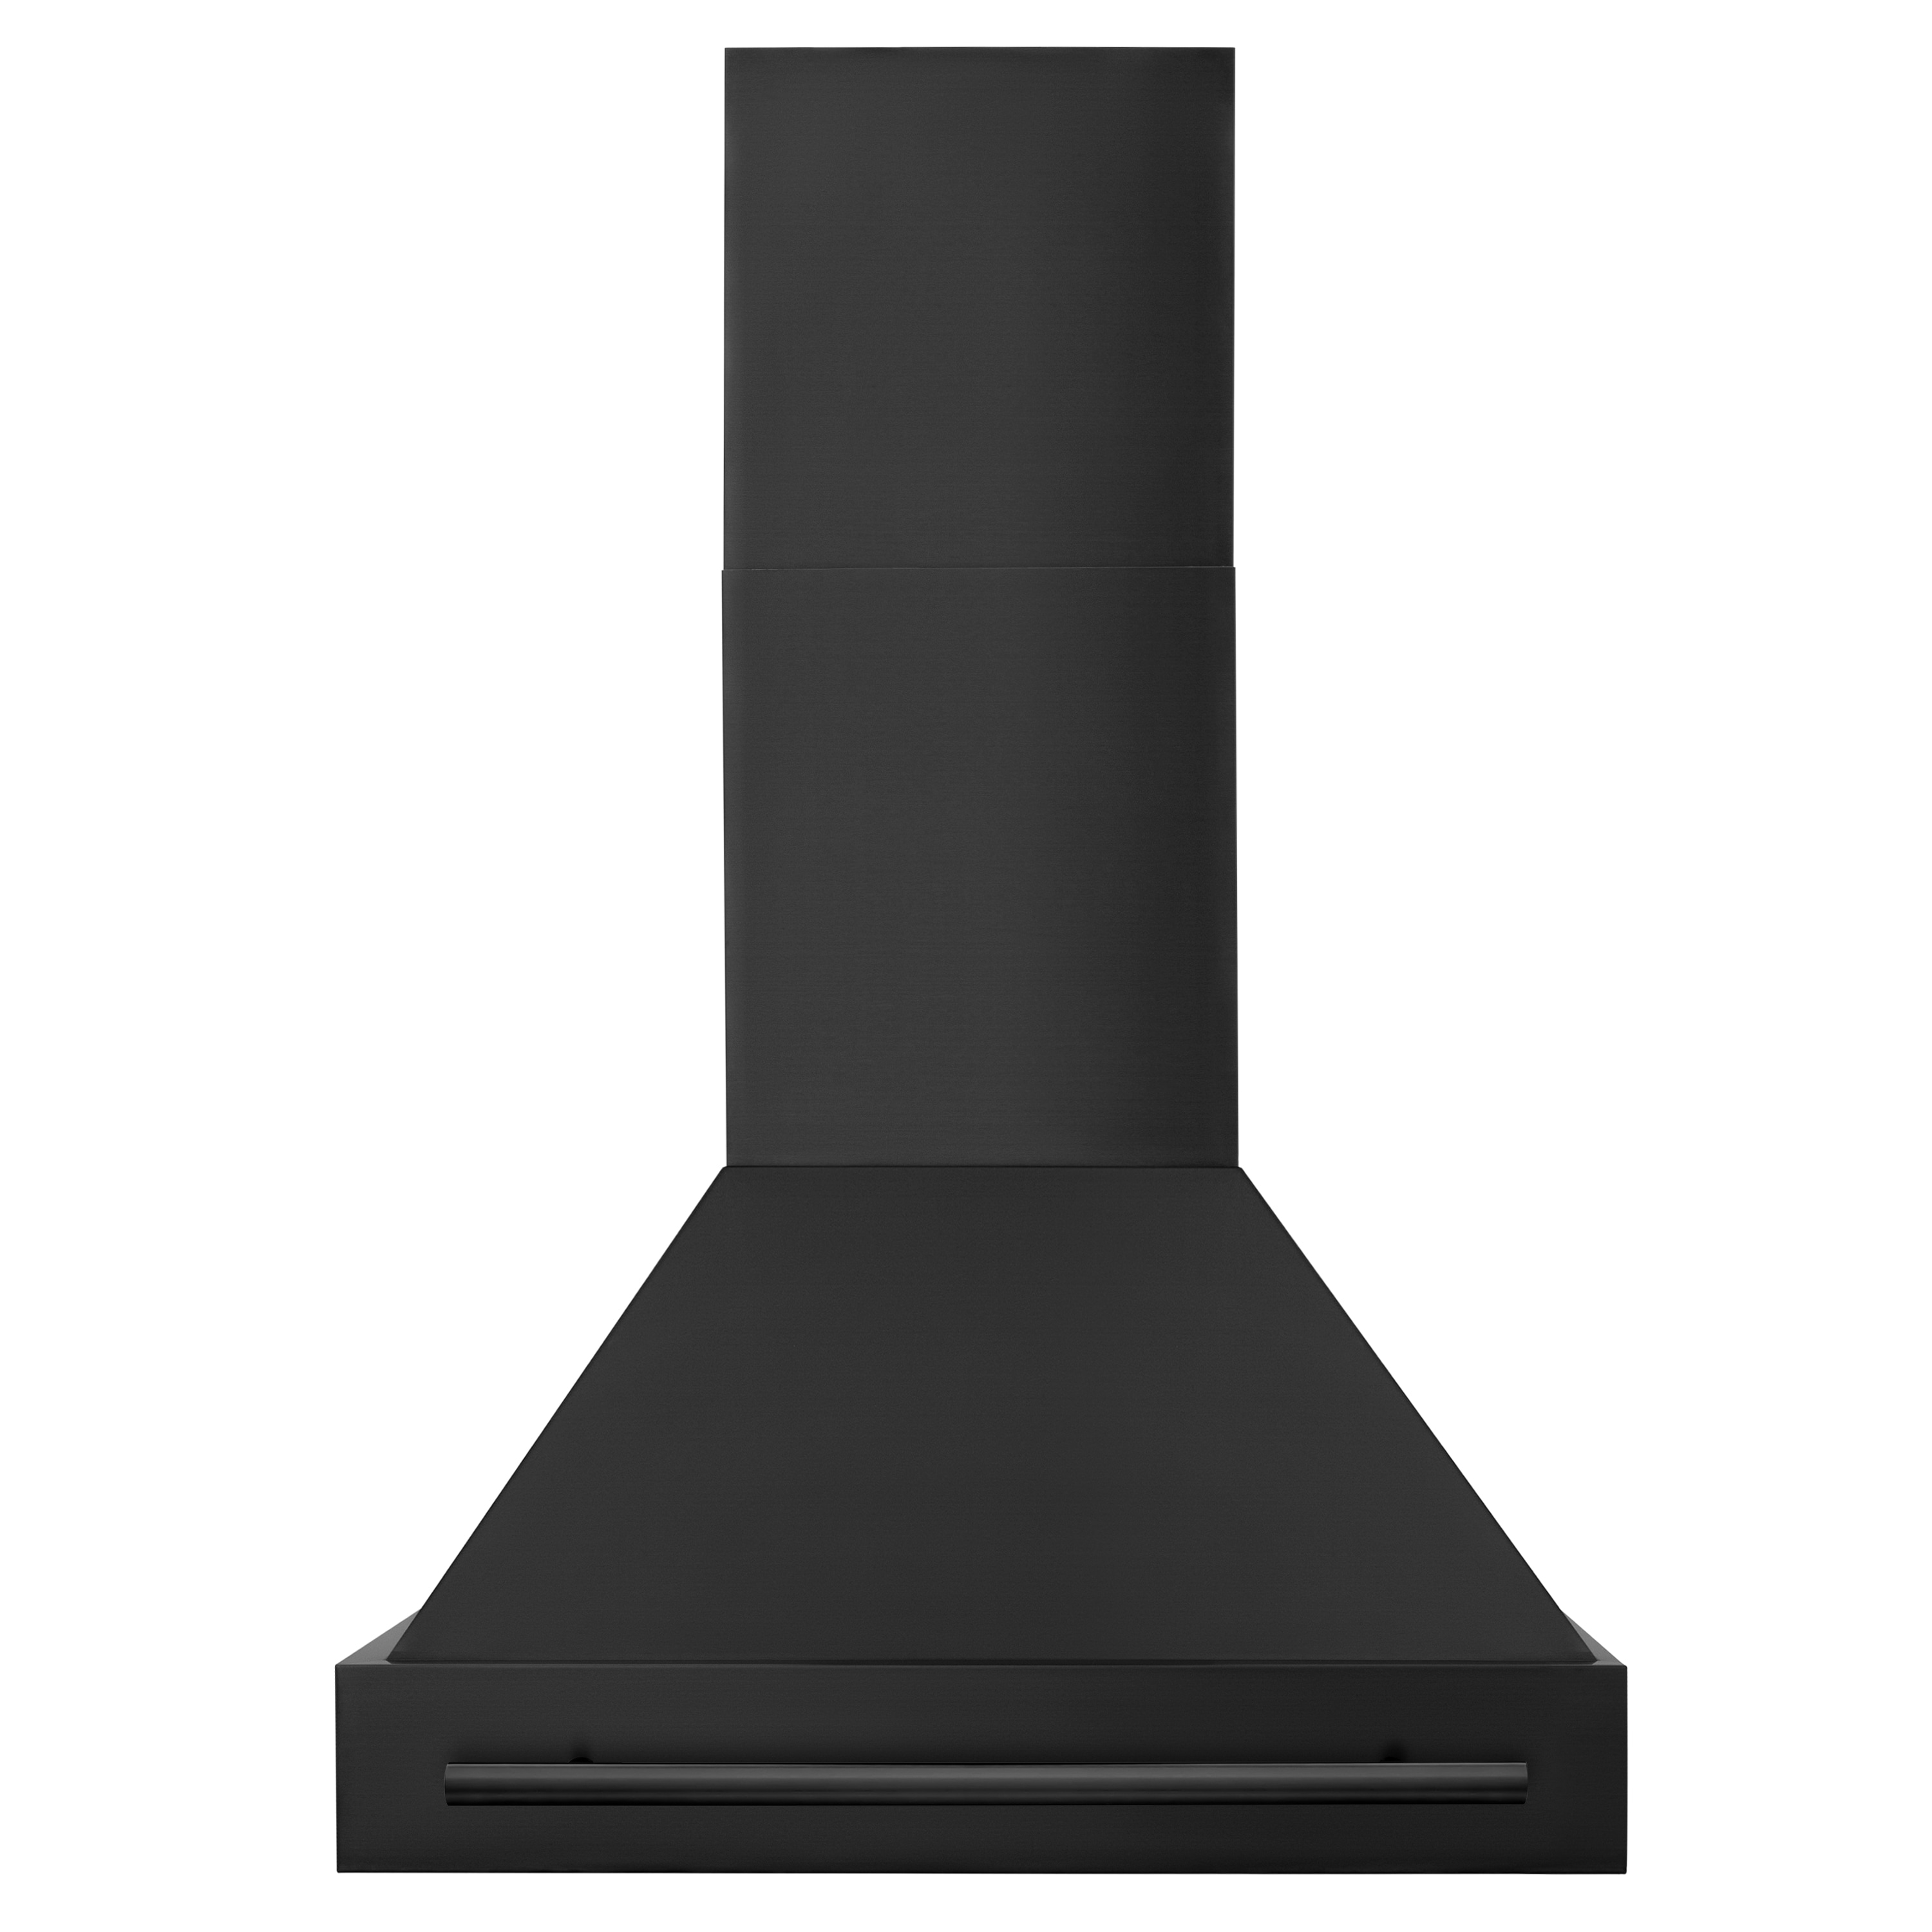 ZLINE 30 Black Stainless Steel Range Hood with Black Stainless Steel Handle (BS655-30-BS)